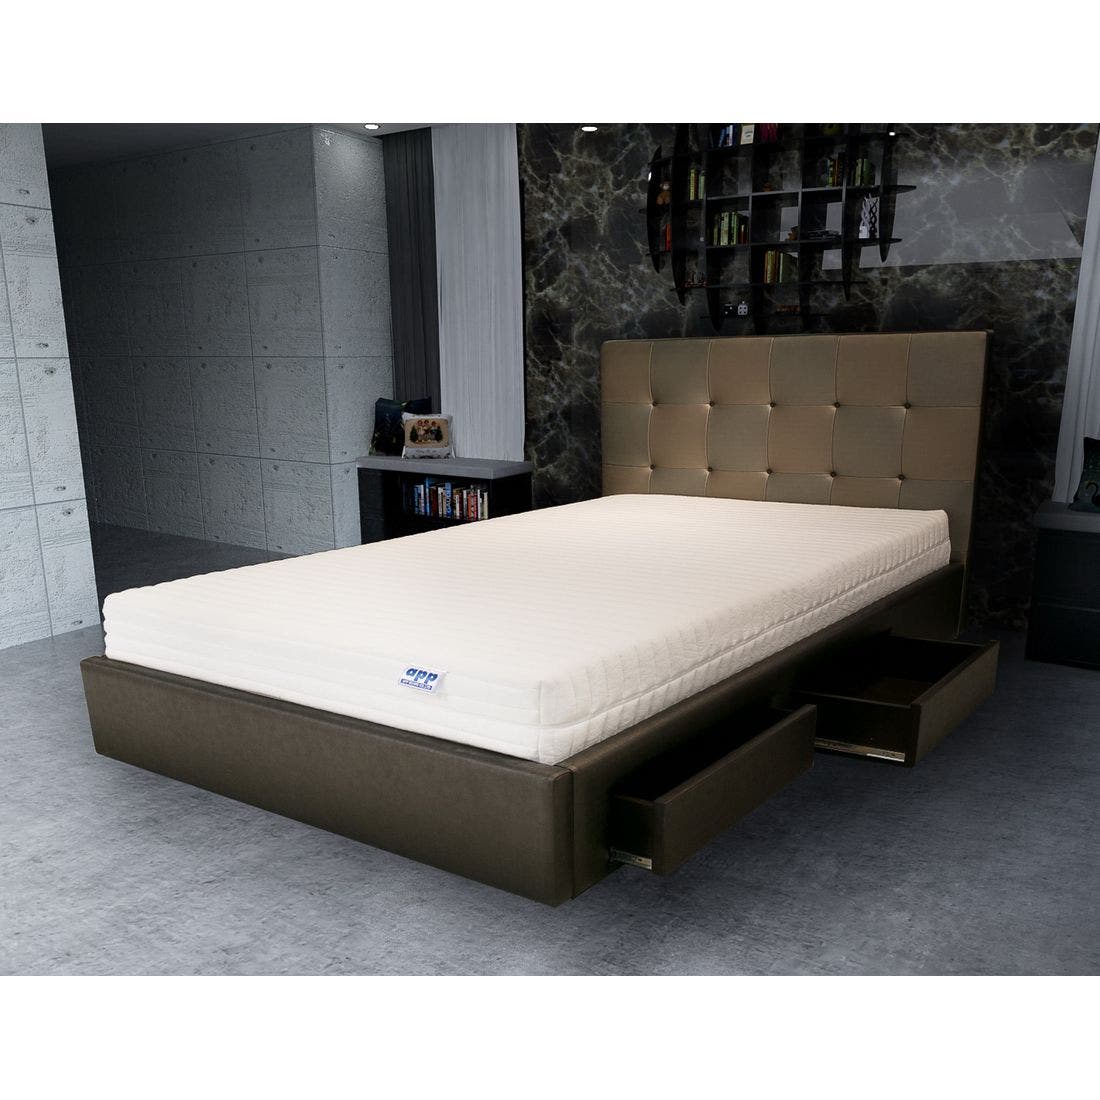 39001668-mattress-bedding-mattresses-latex-mattresses-31